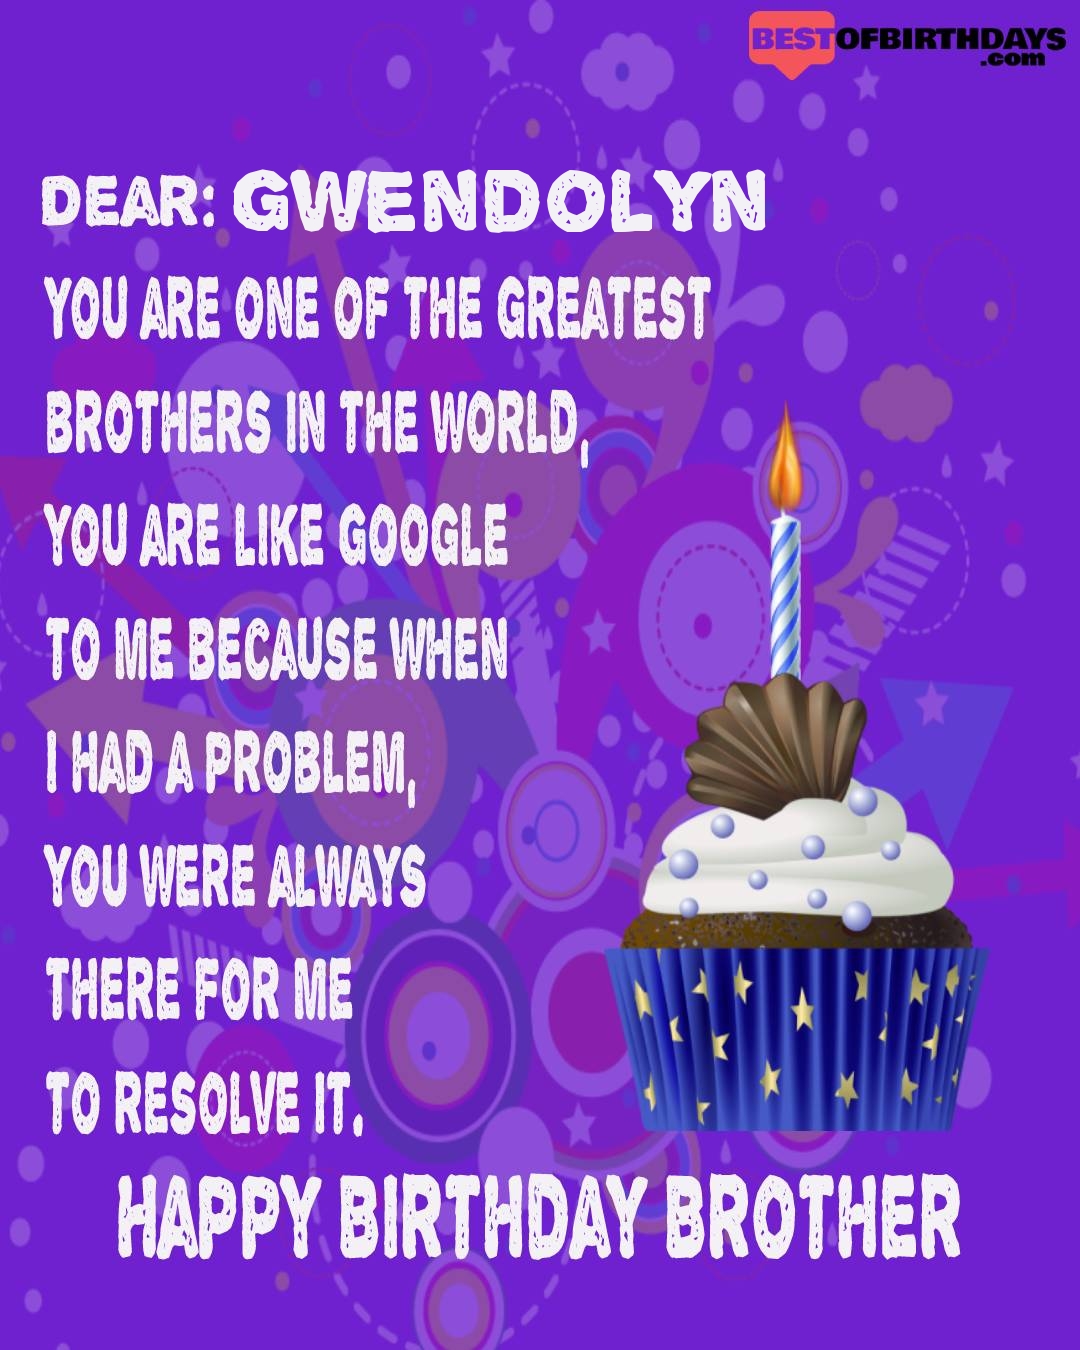 Happy birthday gwendolyn bhai brother bro